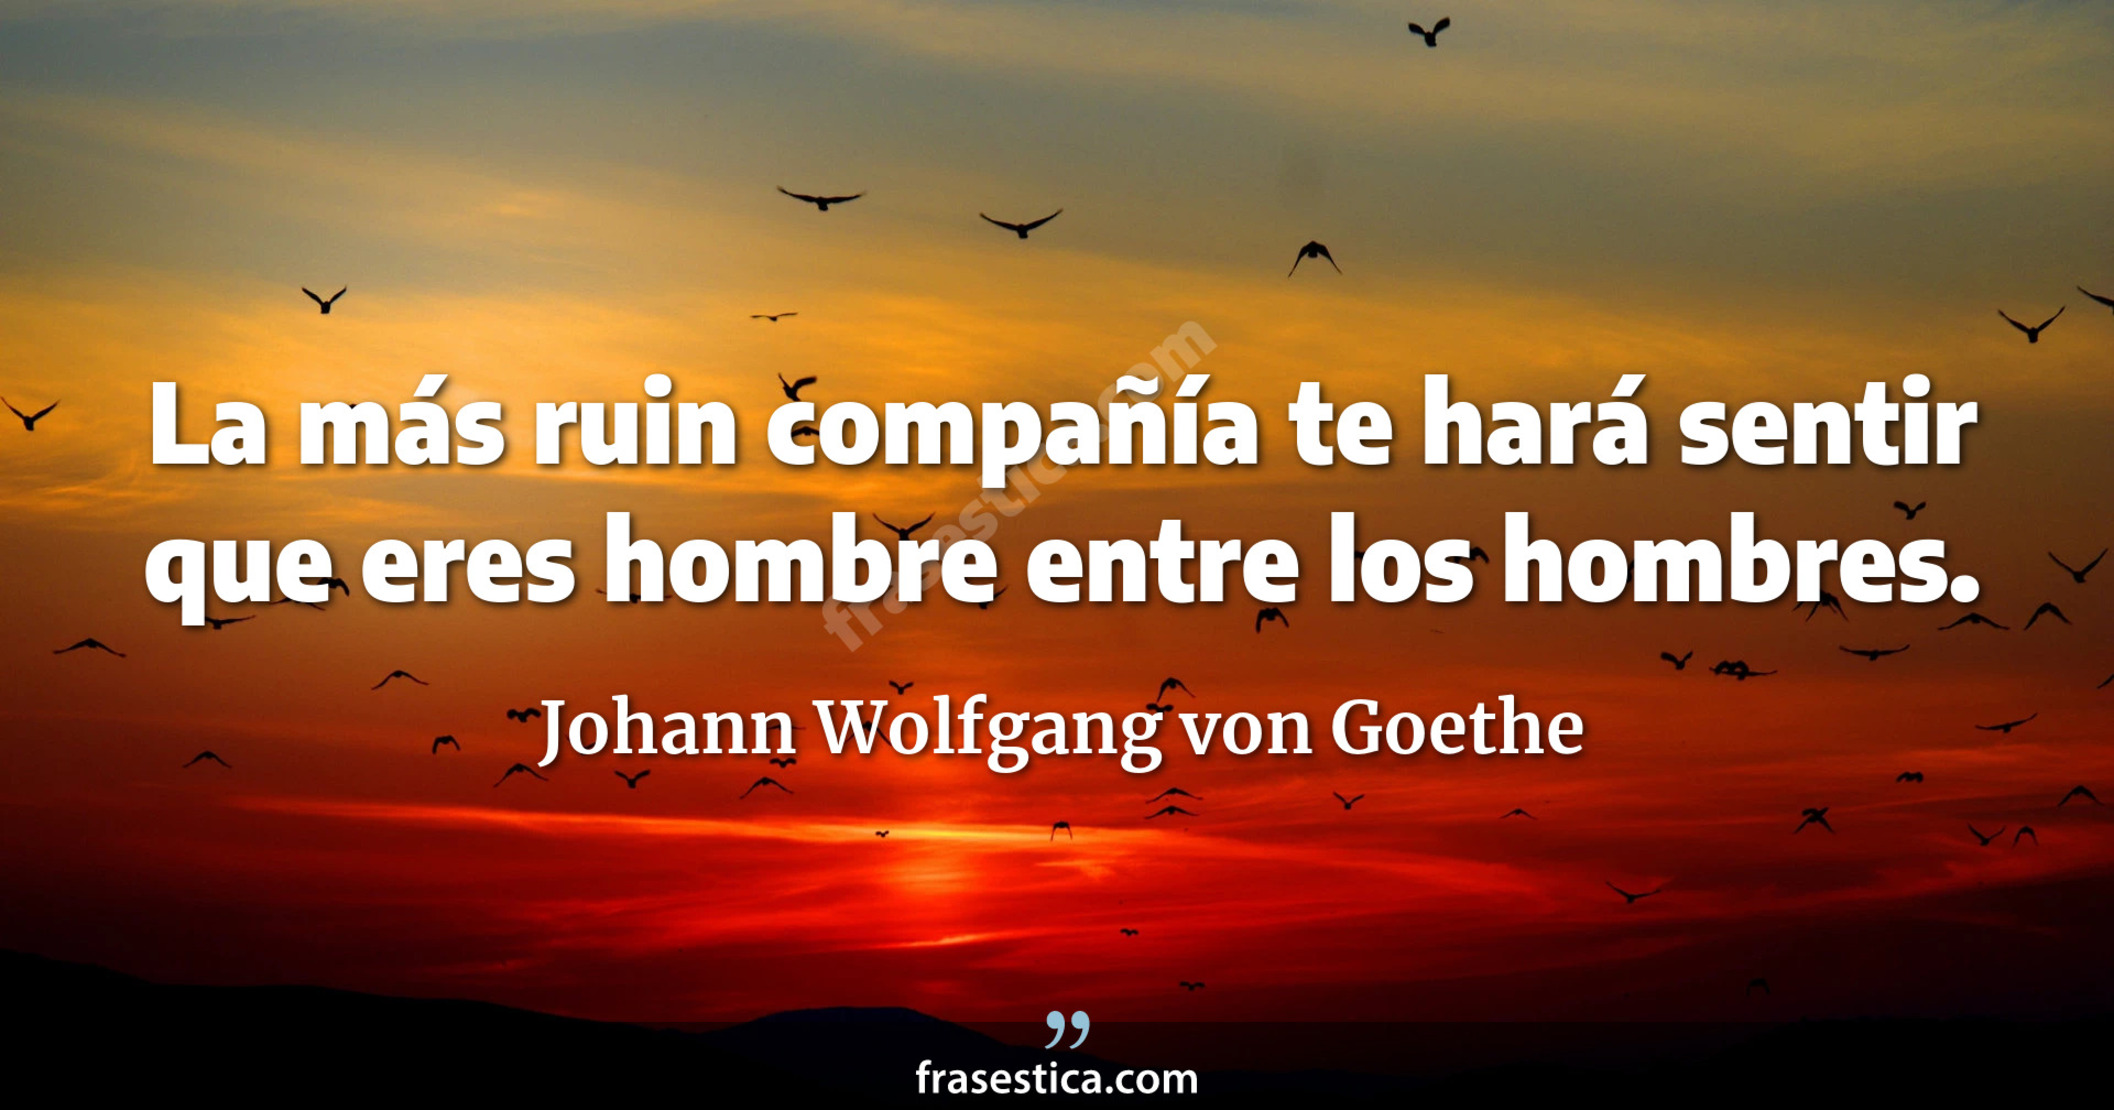 La más ruin compañía te hará sentir que eres hombre entre los hombres. - Johann Wolfgang von Goethe